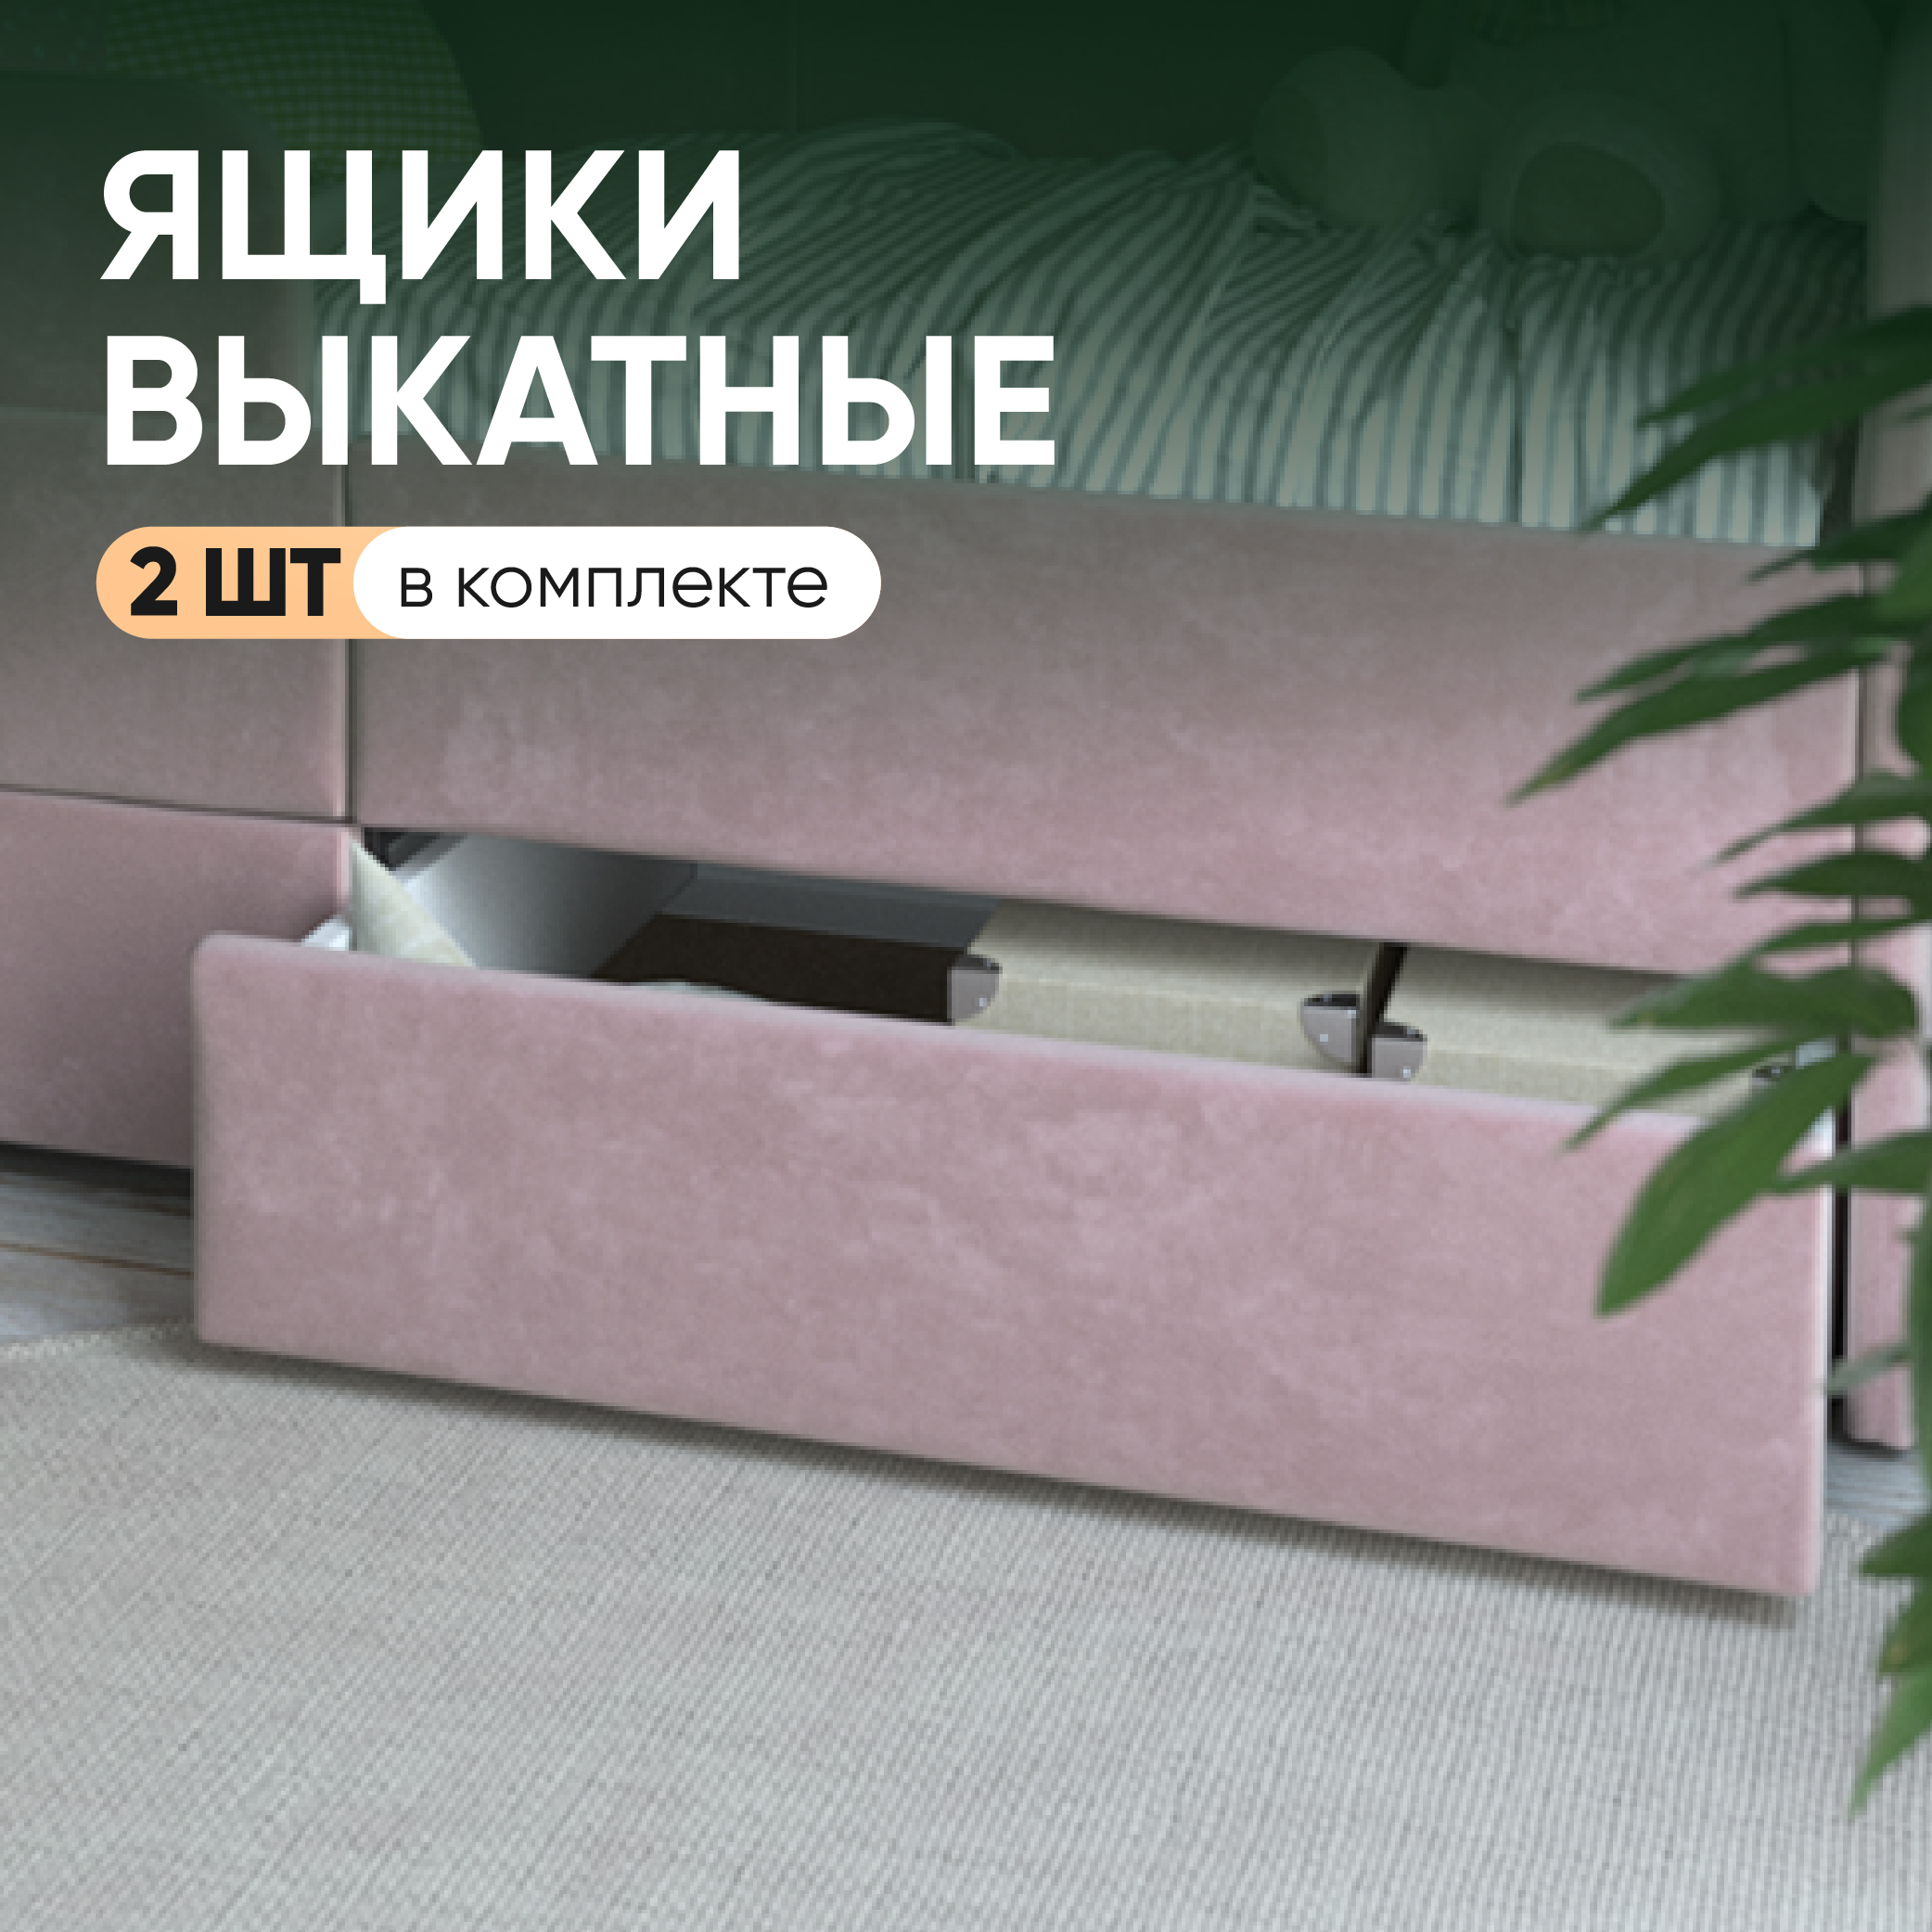 Выкатные ящики на SleepAngel для детской кровати-дивана Smile, розовый, 2 шт, 140х70 см